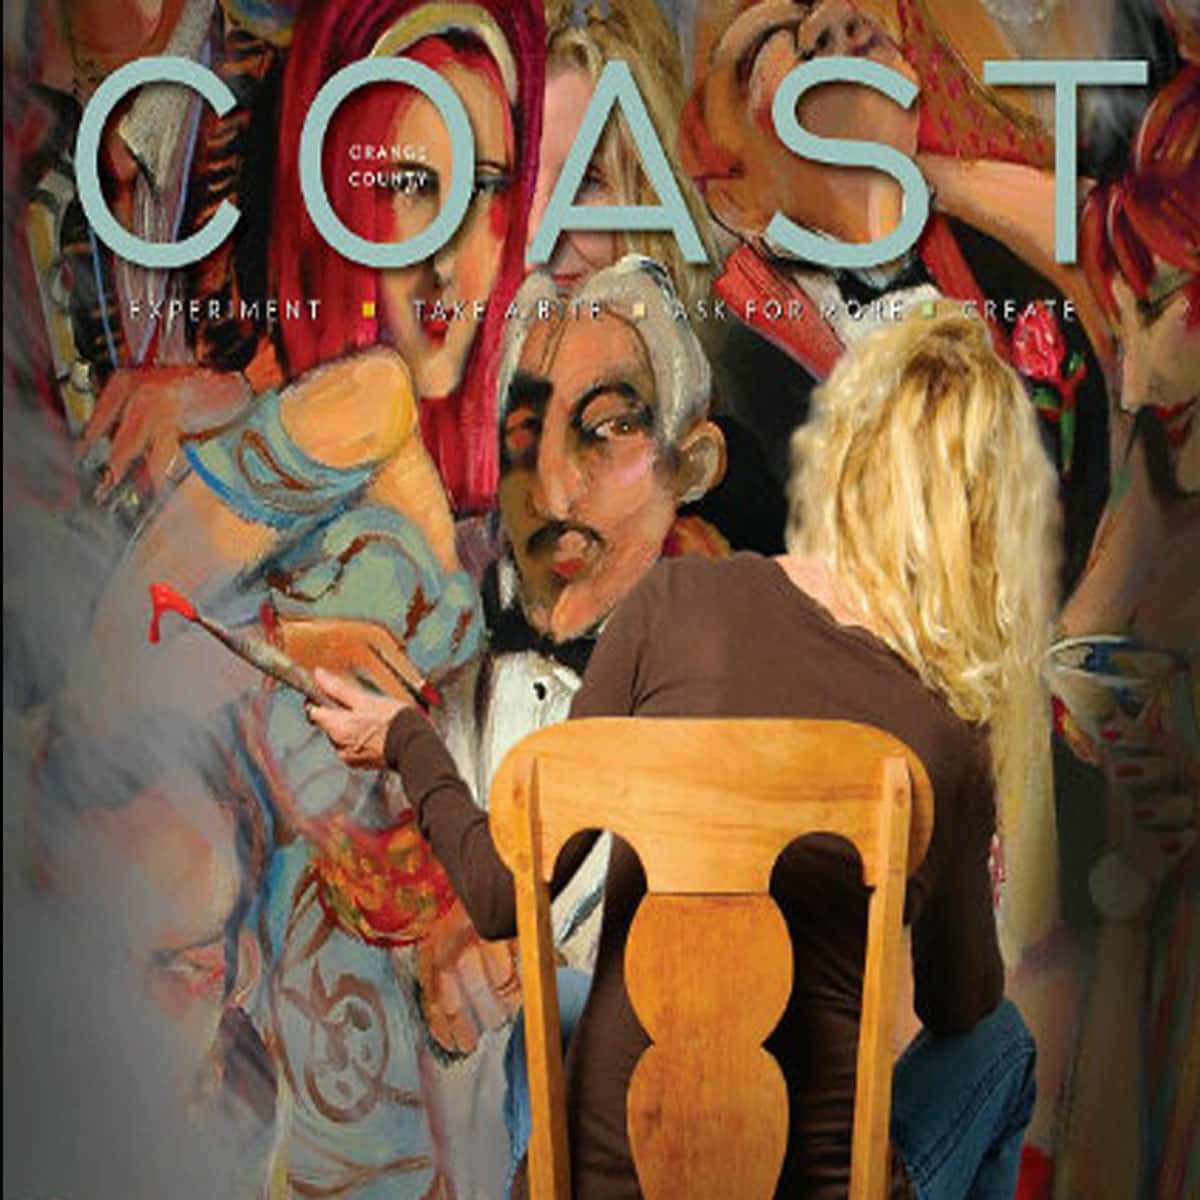 Coast magazine